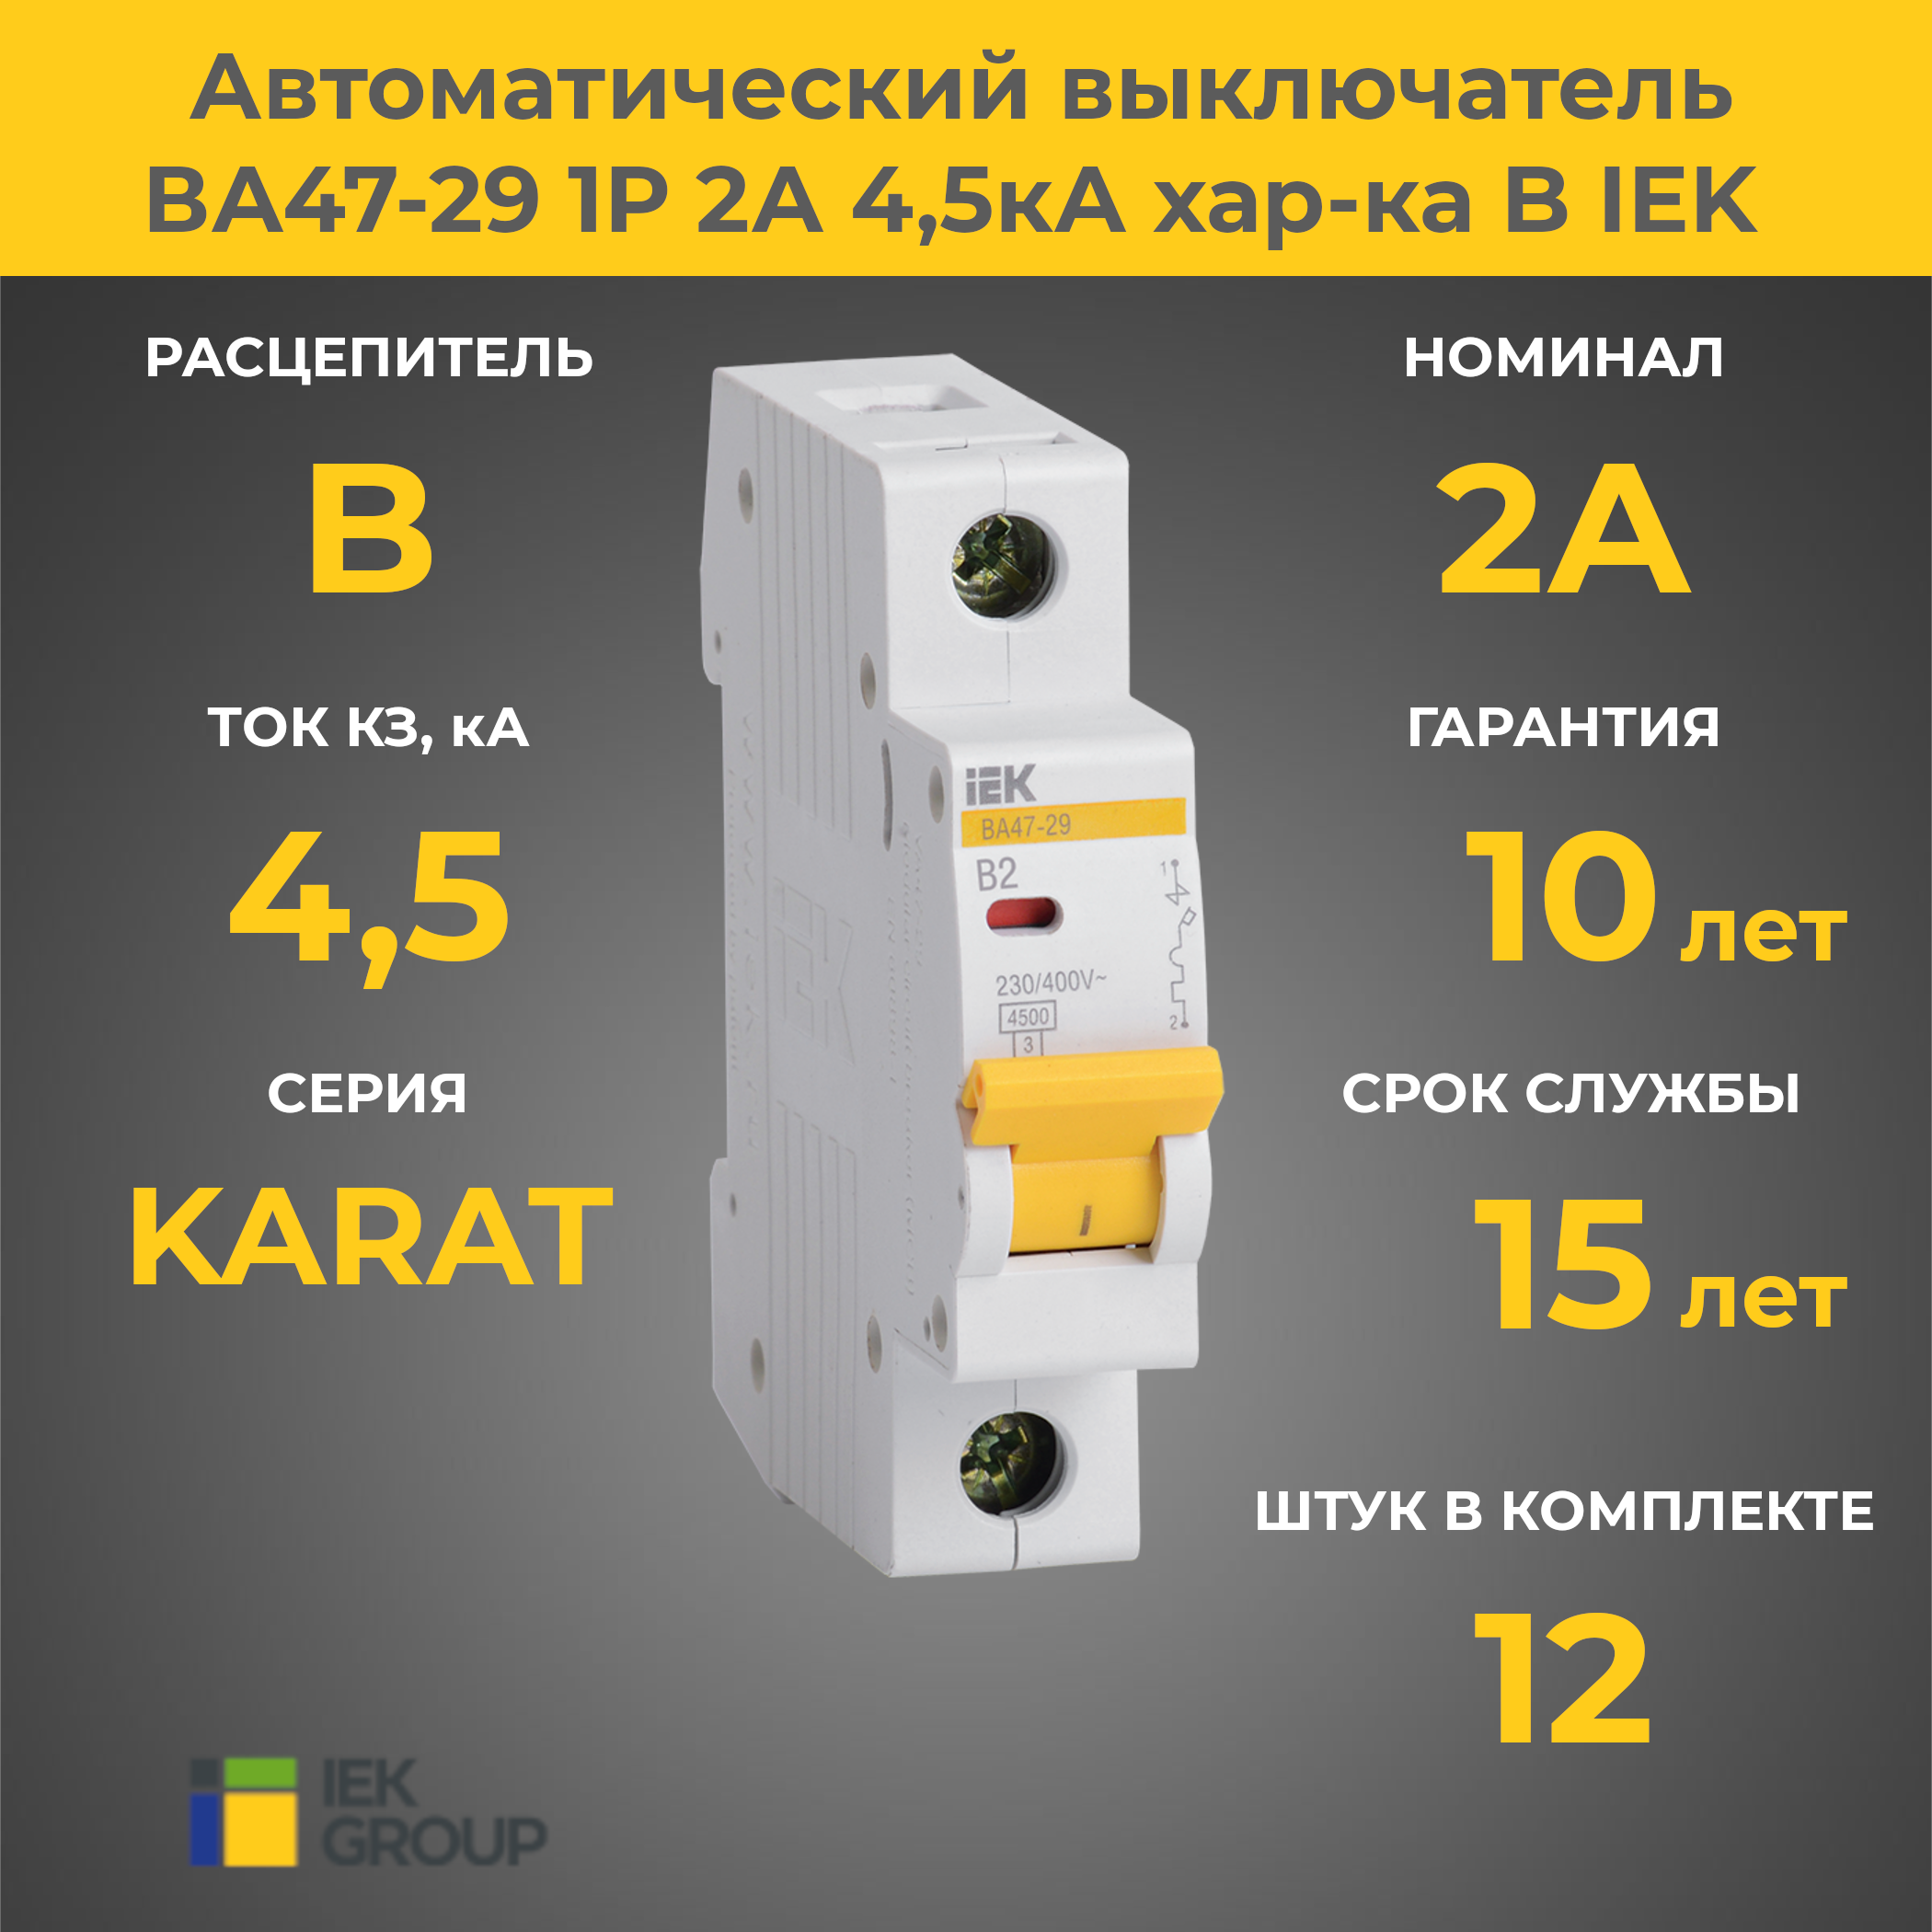 Автоматический выключатель ВА47-29 1P 2A 4,5 kA, хар-ка B, IEK, 12 шт